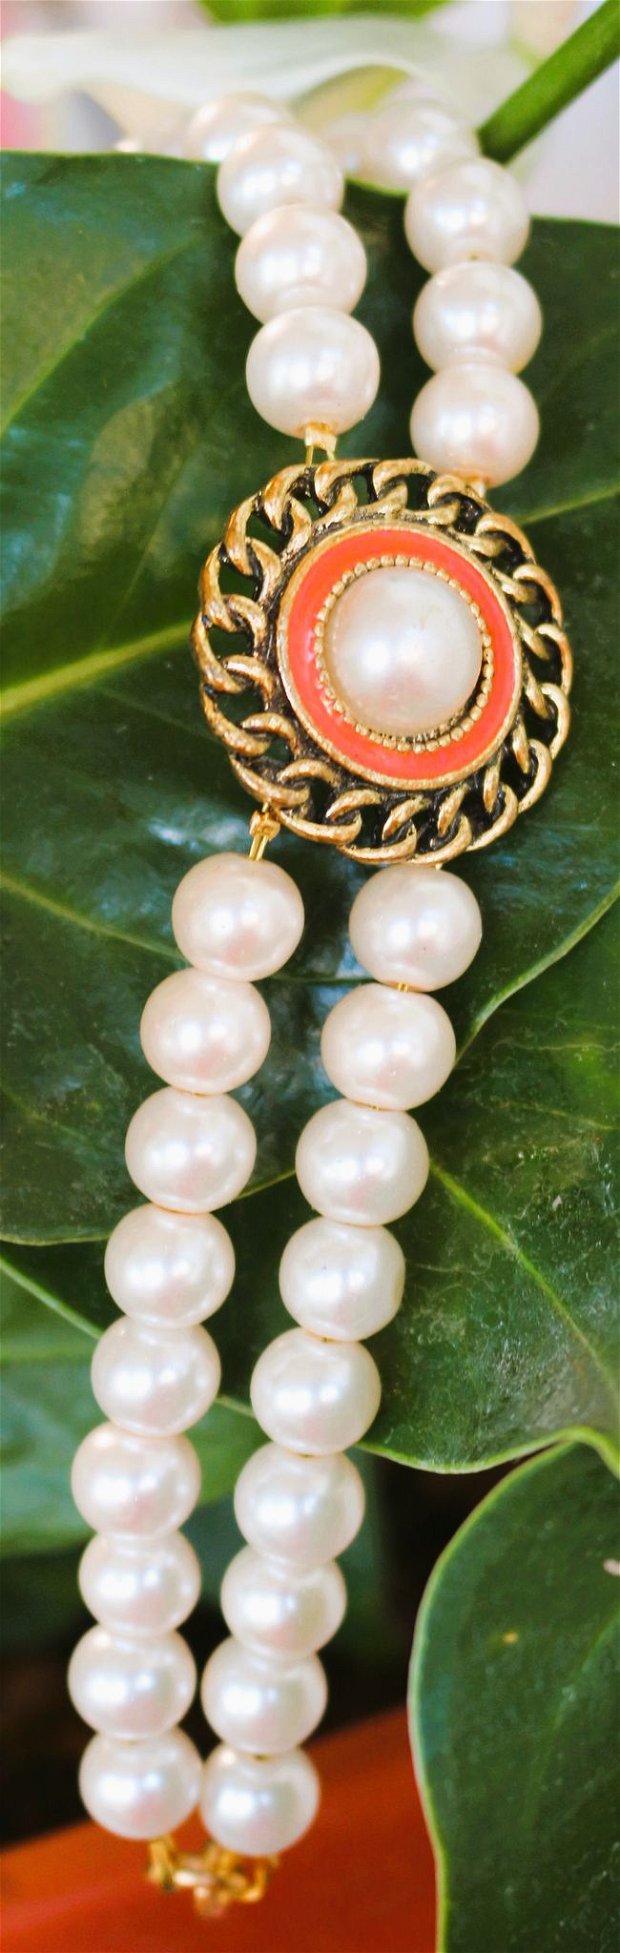 Bratara handmade din perle de sticla cu un link sub forma de buton